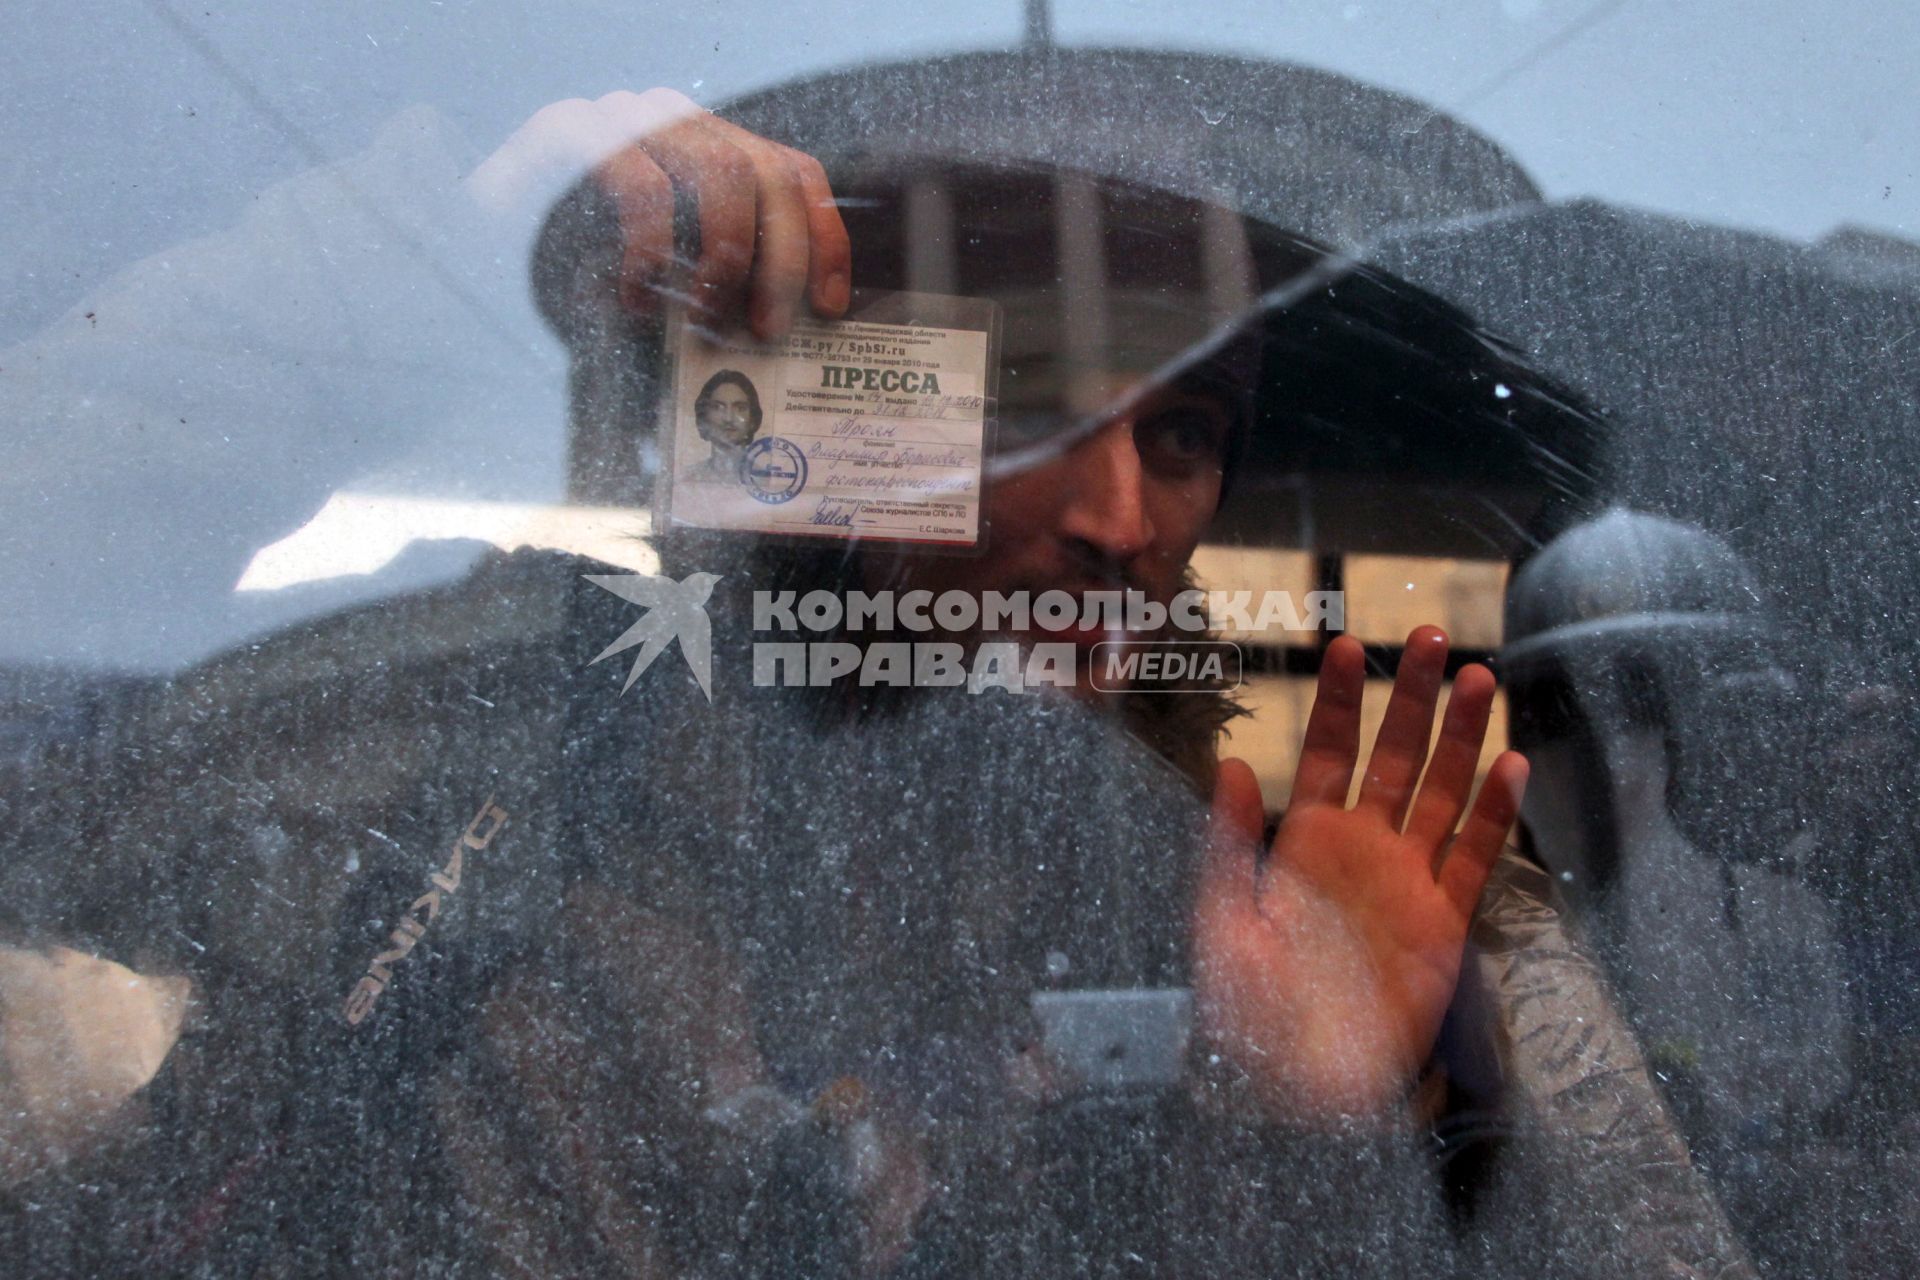 Митинг за честные выборы. Мужчина журналист сидя в автозаке показывает удостоверение прессы.